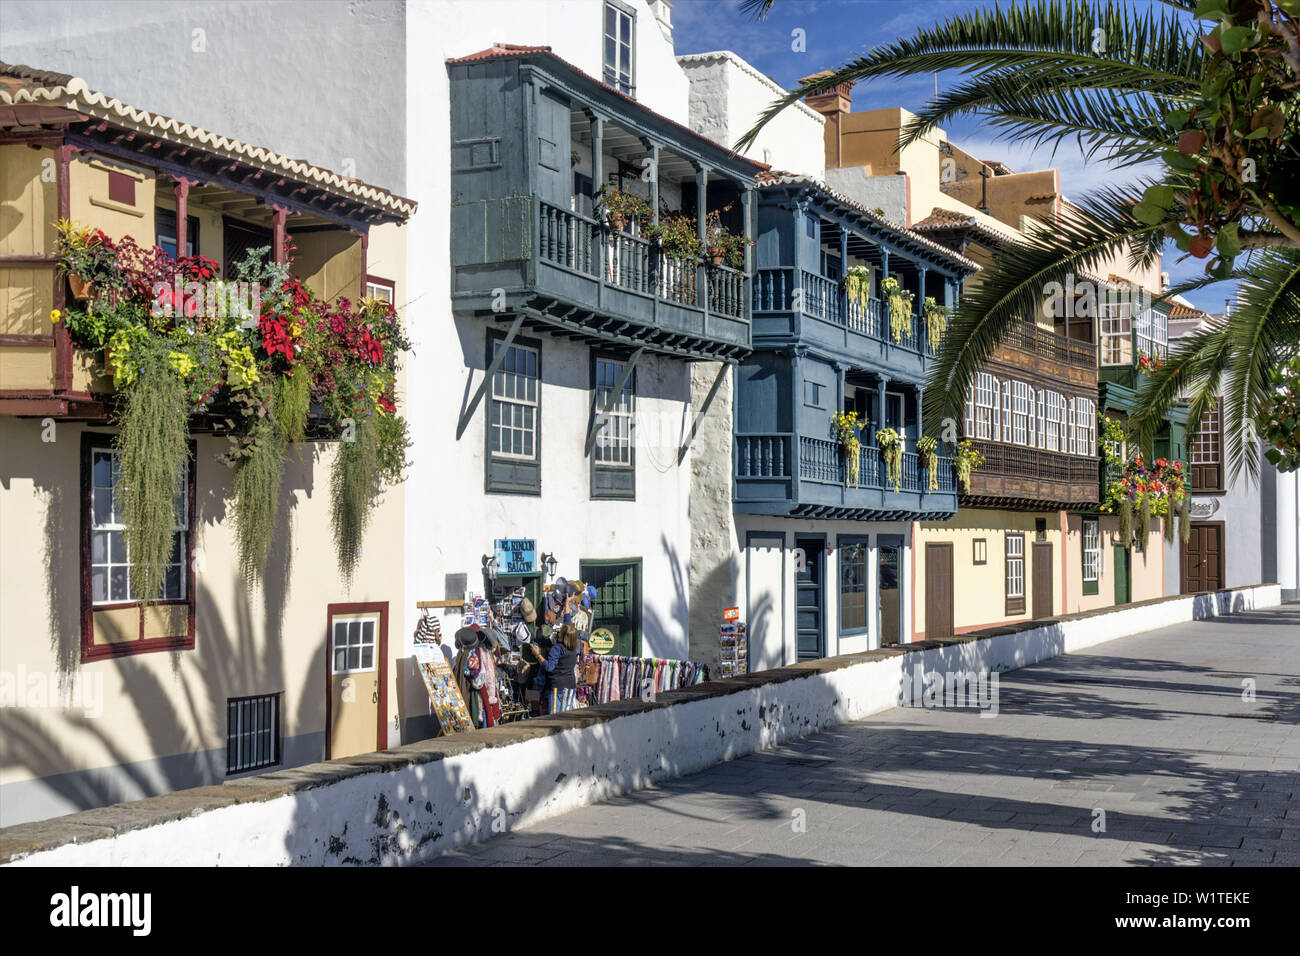 Hilera de casas a lo largo de la Avenida Marítima, balcones de madera con flores, Santa Cruz, Santa Cruz de La Palma, Islas Canarias, España Foto de stock